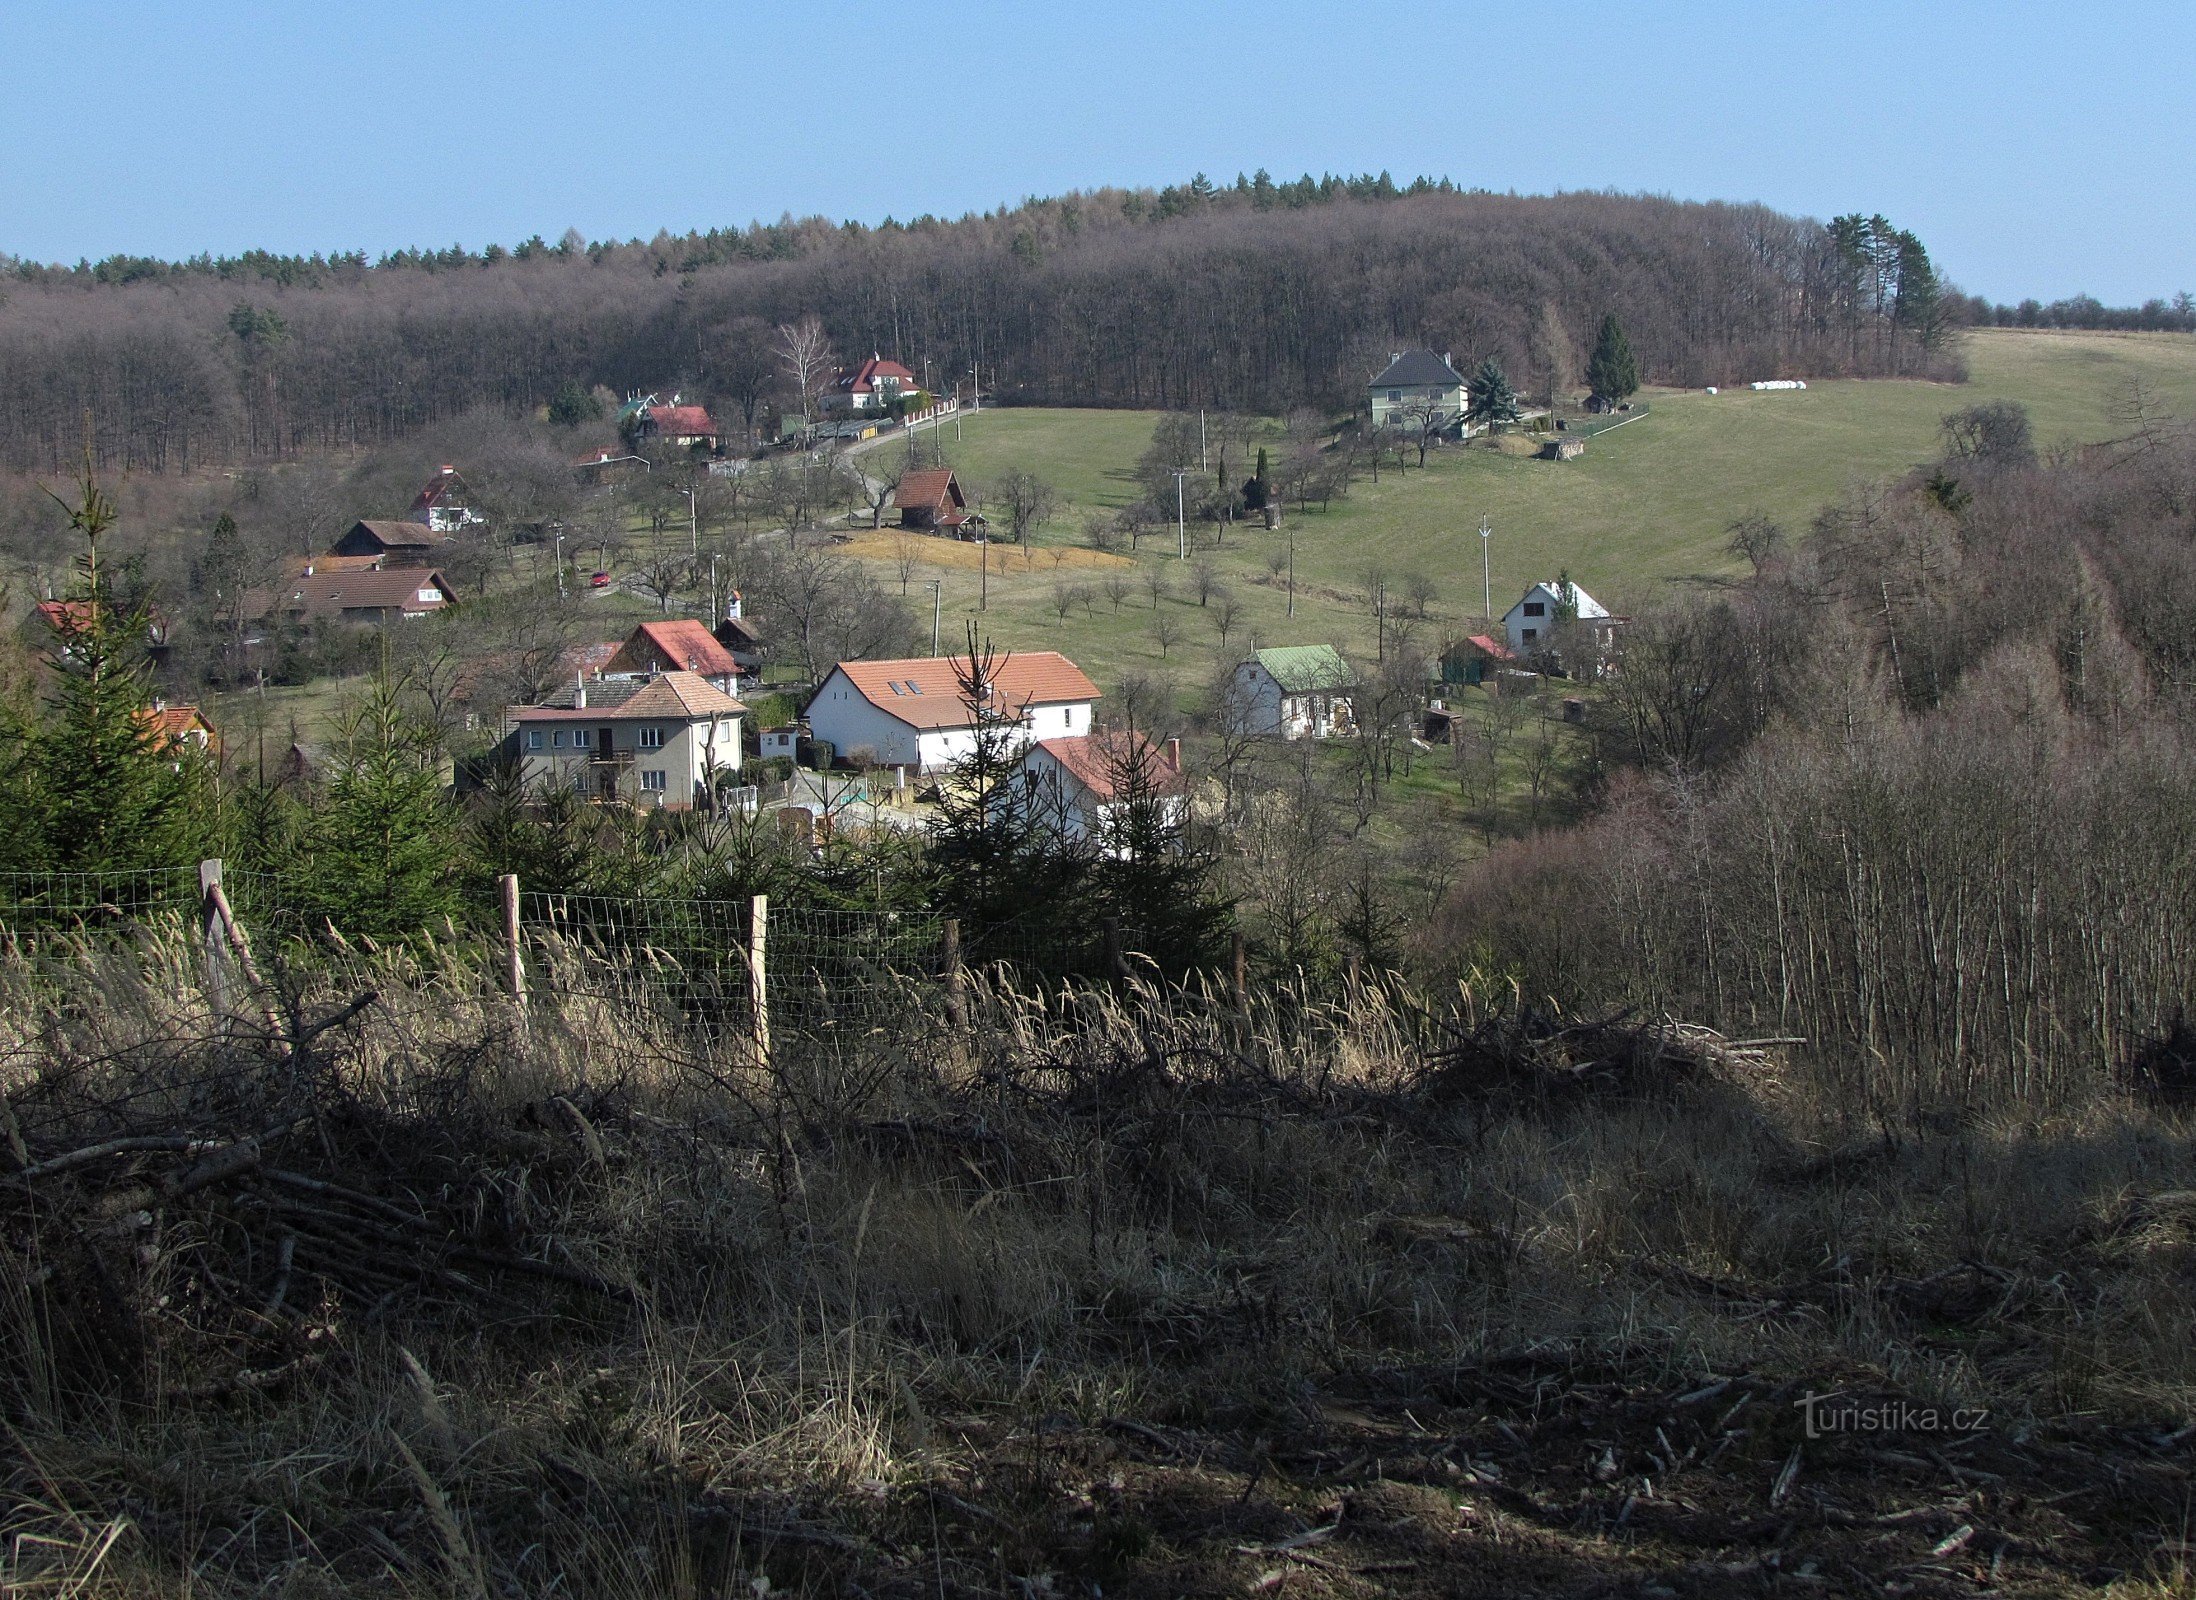 Les clairières de Šťák près de Zlín